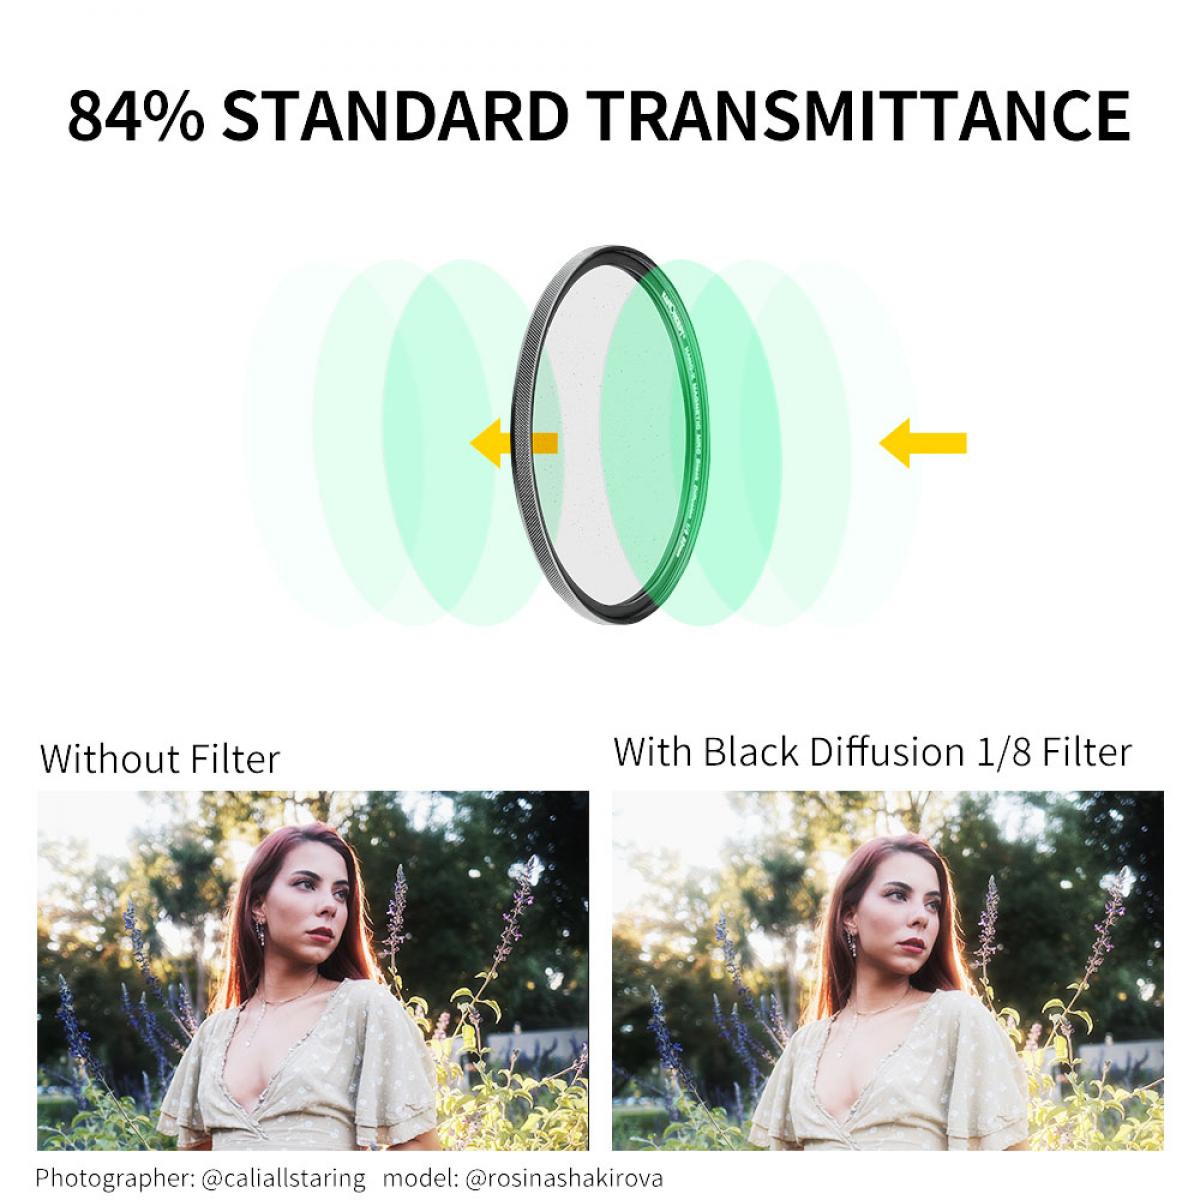 K&F Concept NANO-X Black Diffusion 1/8 Filter 67mm 